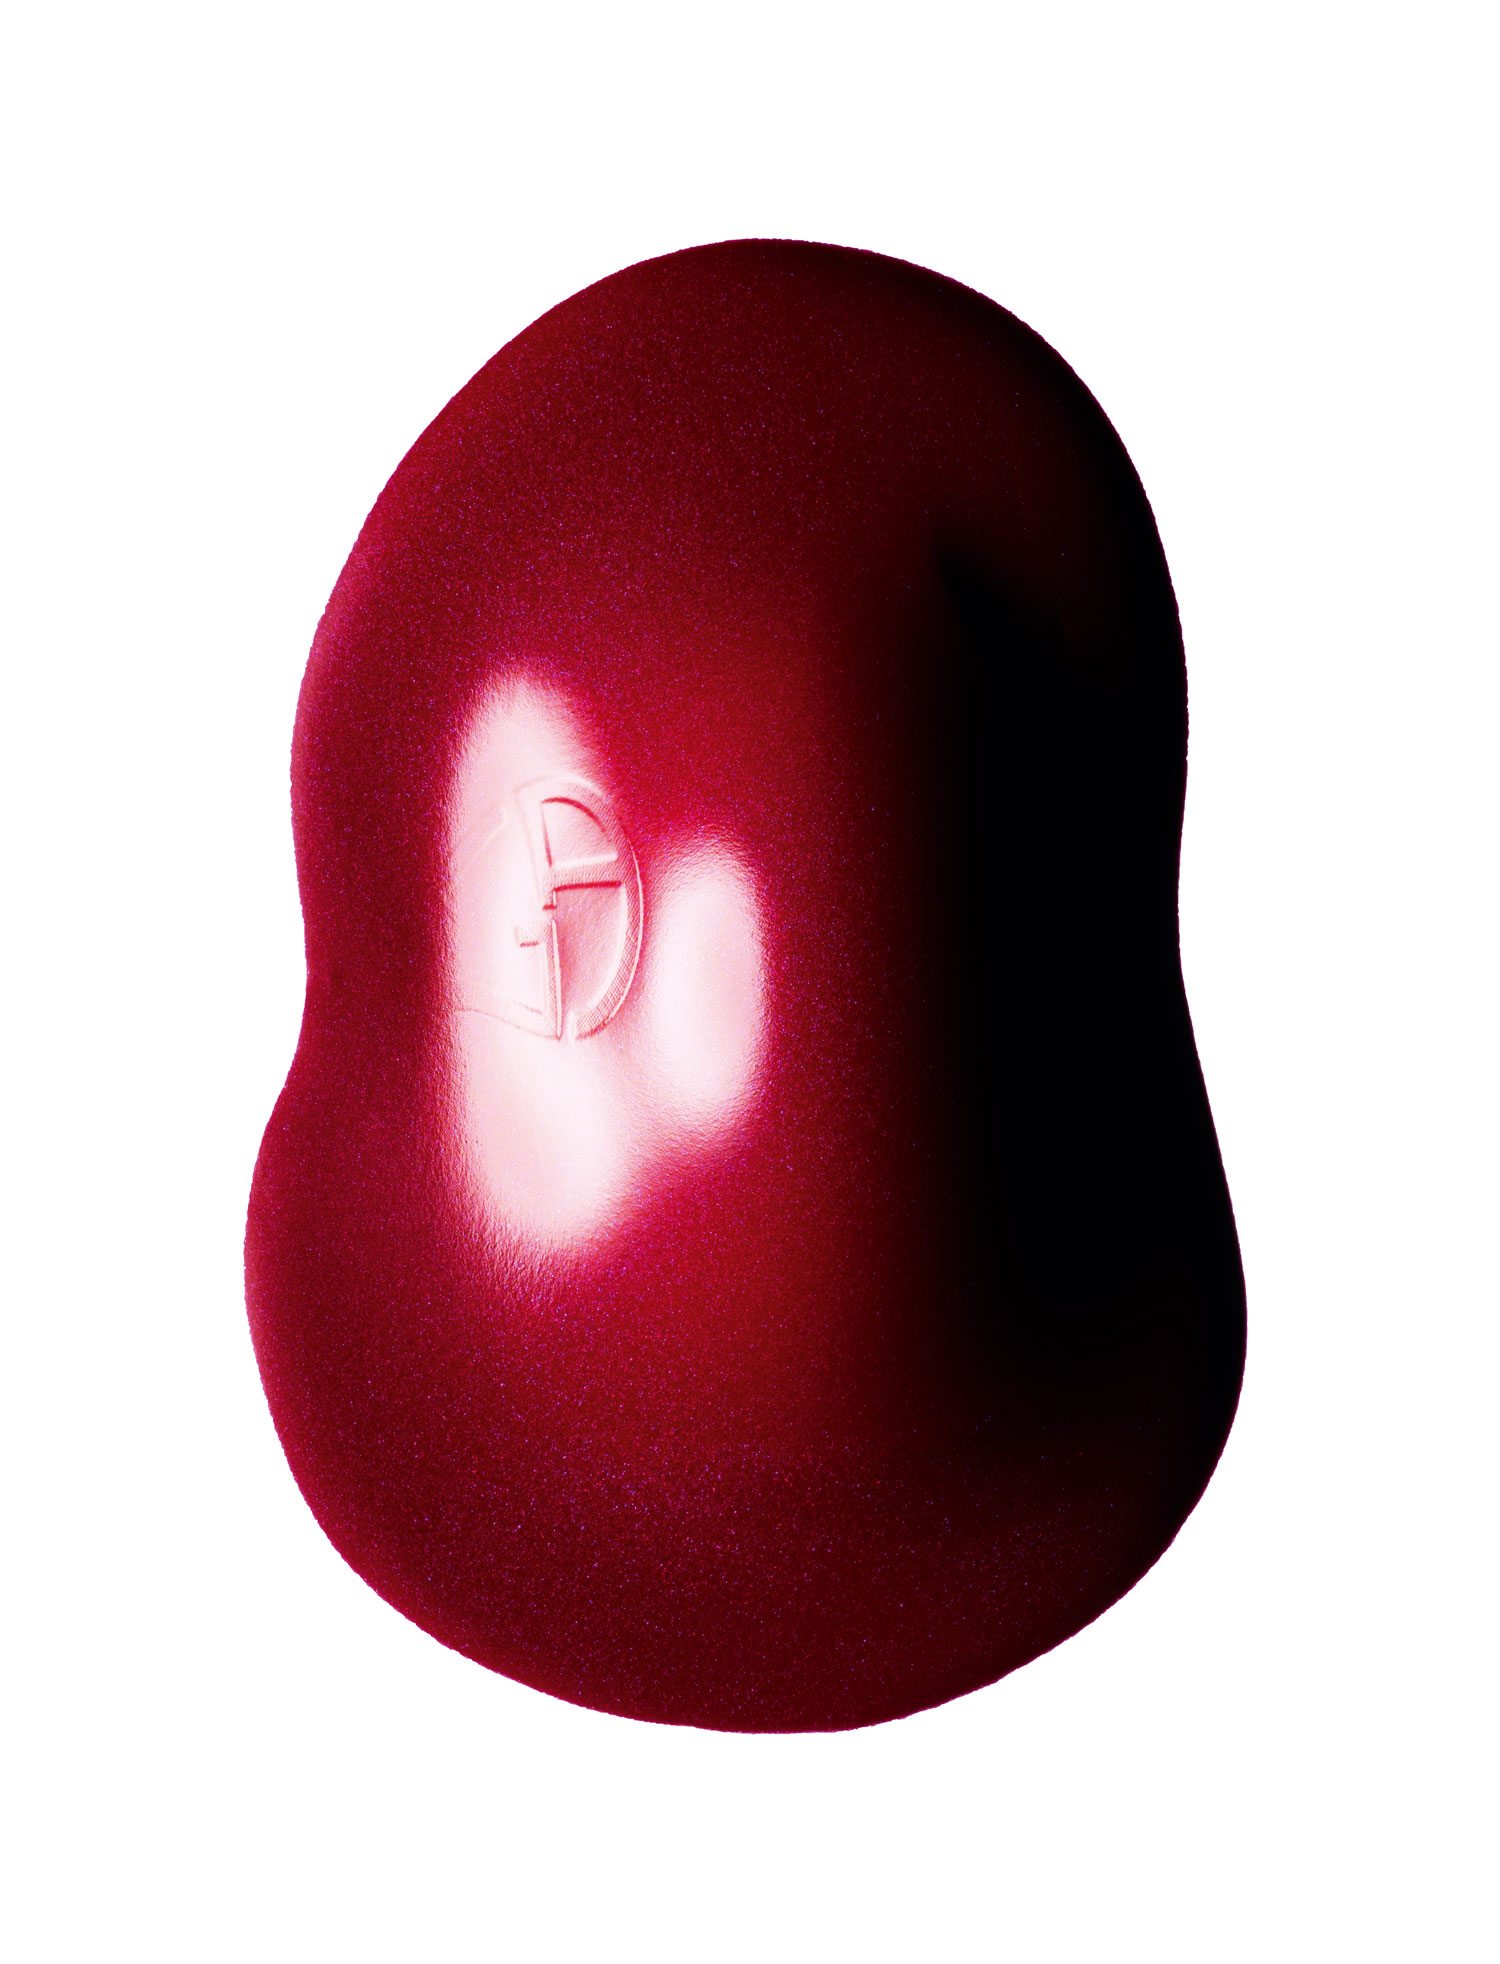 “Lipstick”, les rouges à lèvres mats photographiés par Guido Mocafico